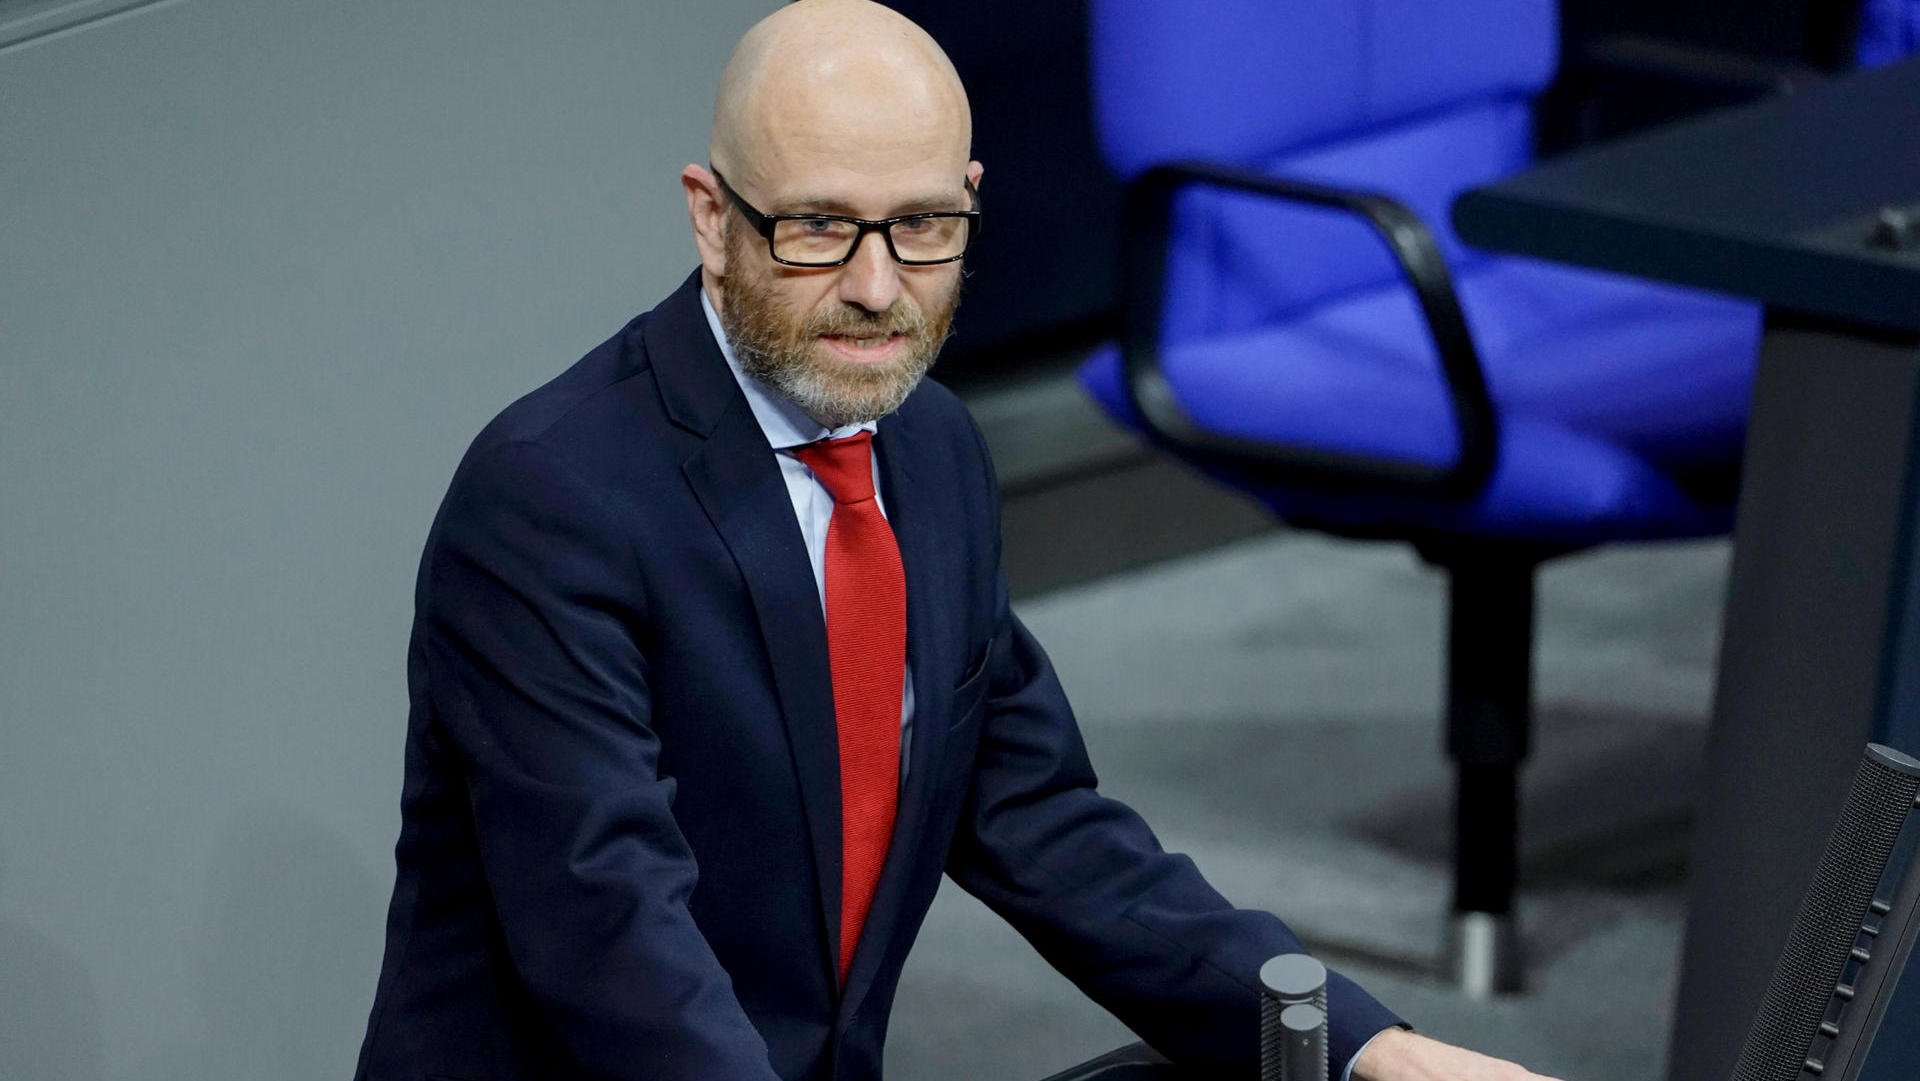 CDU-Politiker Peter Tauber legt nach schwerer Erkrankung Amt zu Ostern nieder